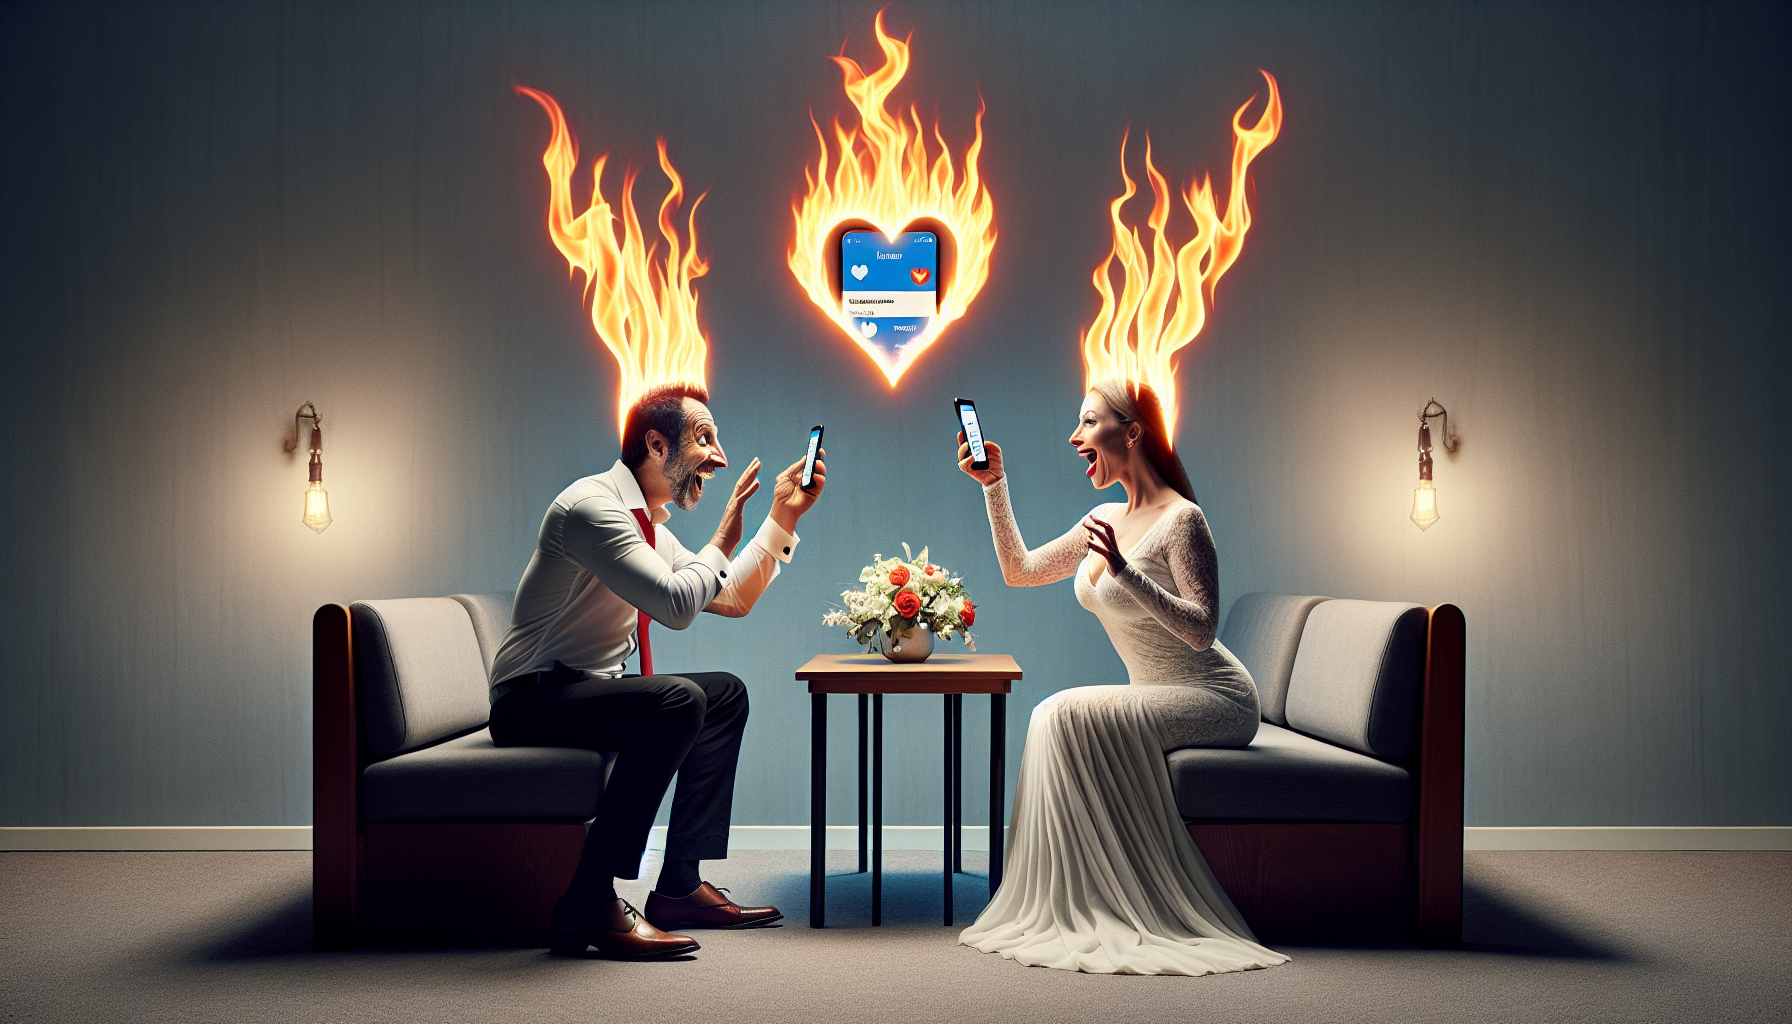 découvrez comment ce couple marié joue avec le feu en utilisant l'application de rencontres de facebook. une histoire passionnante de tentation et de risque.